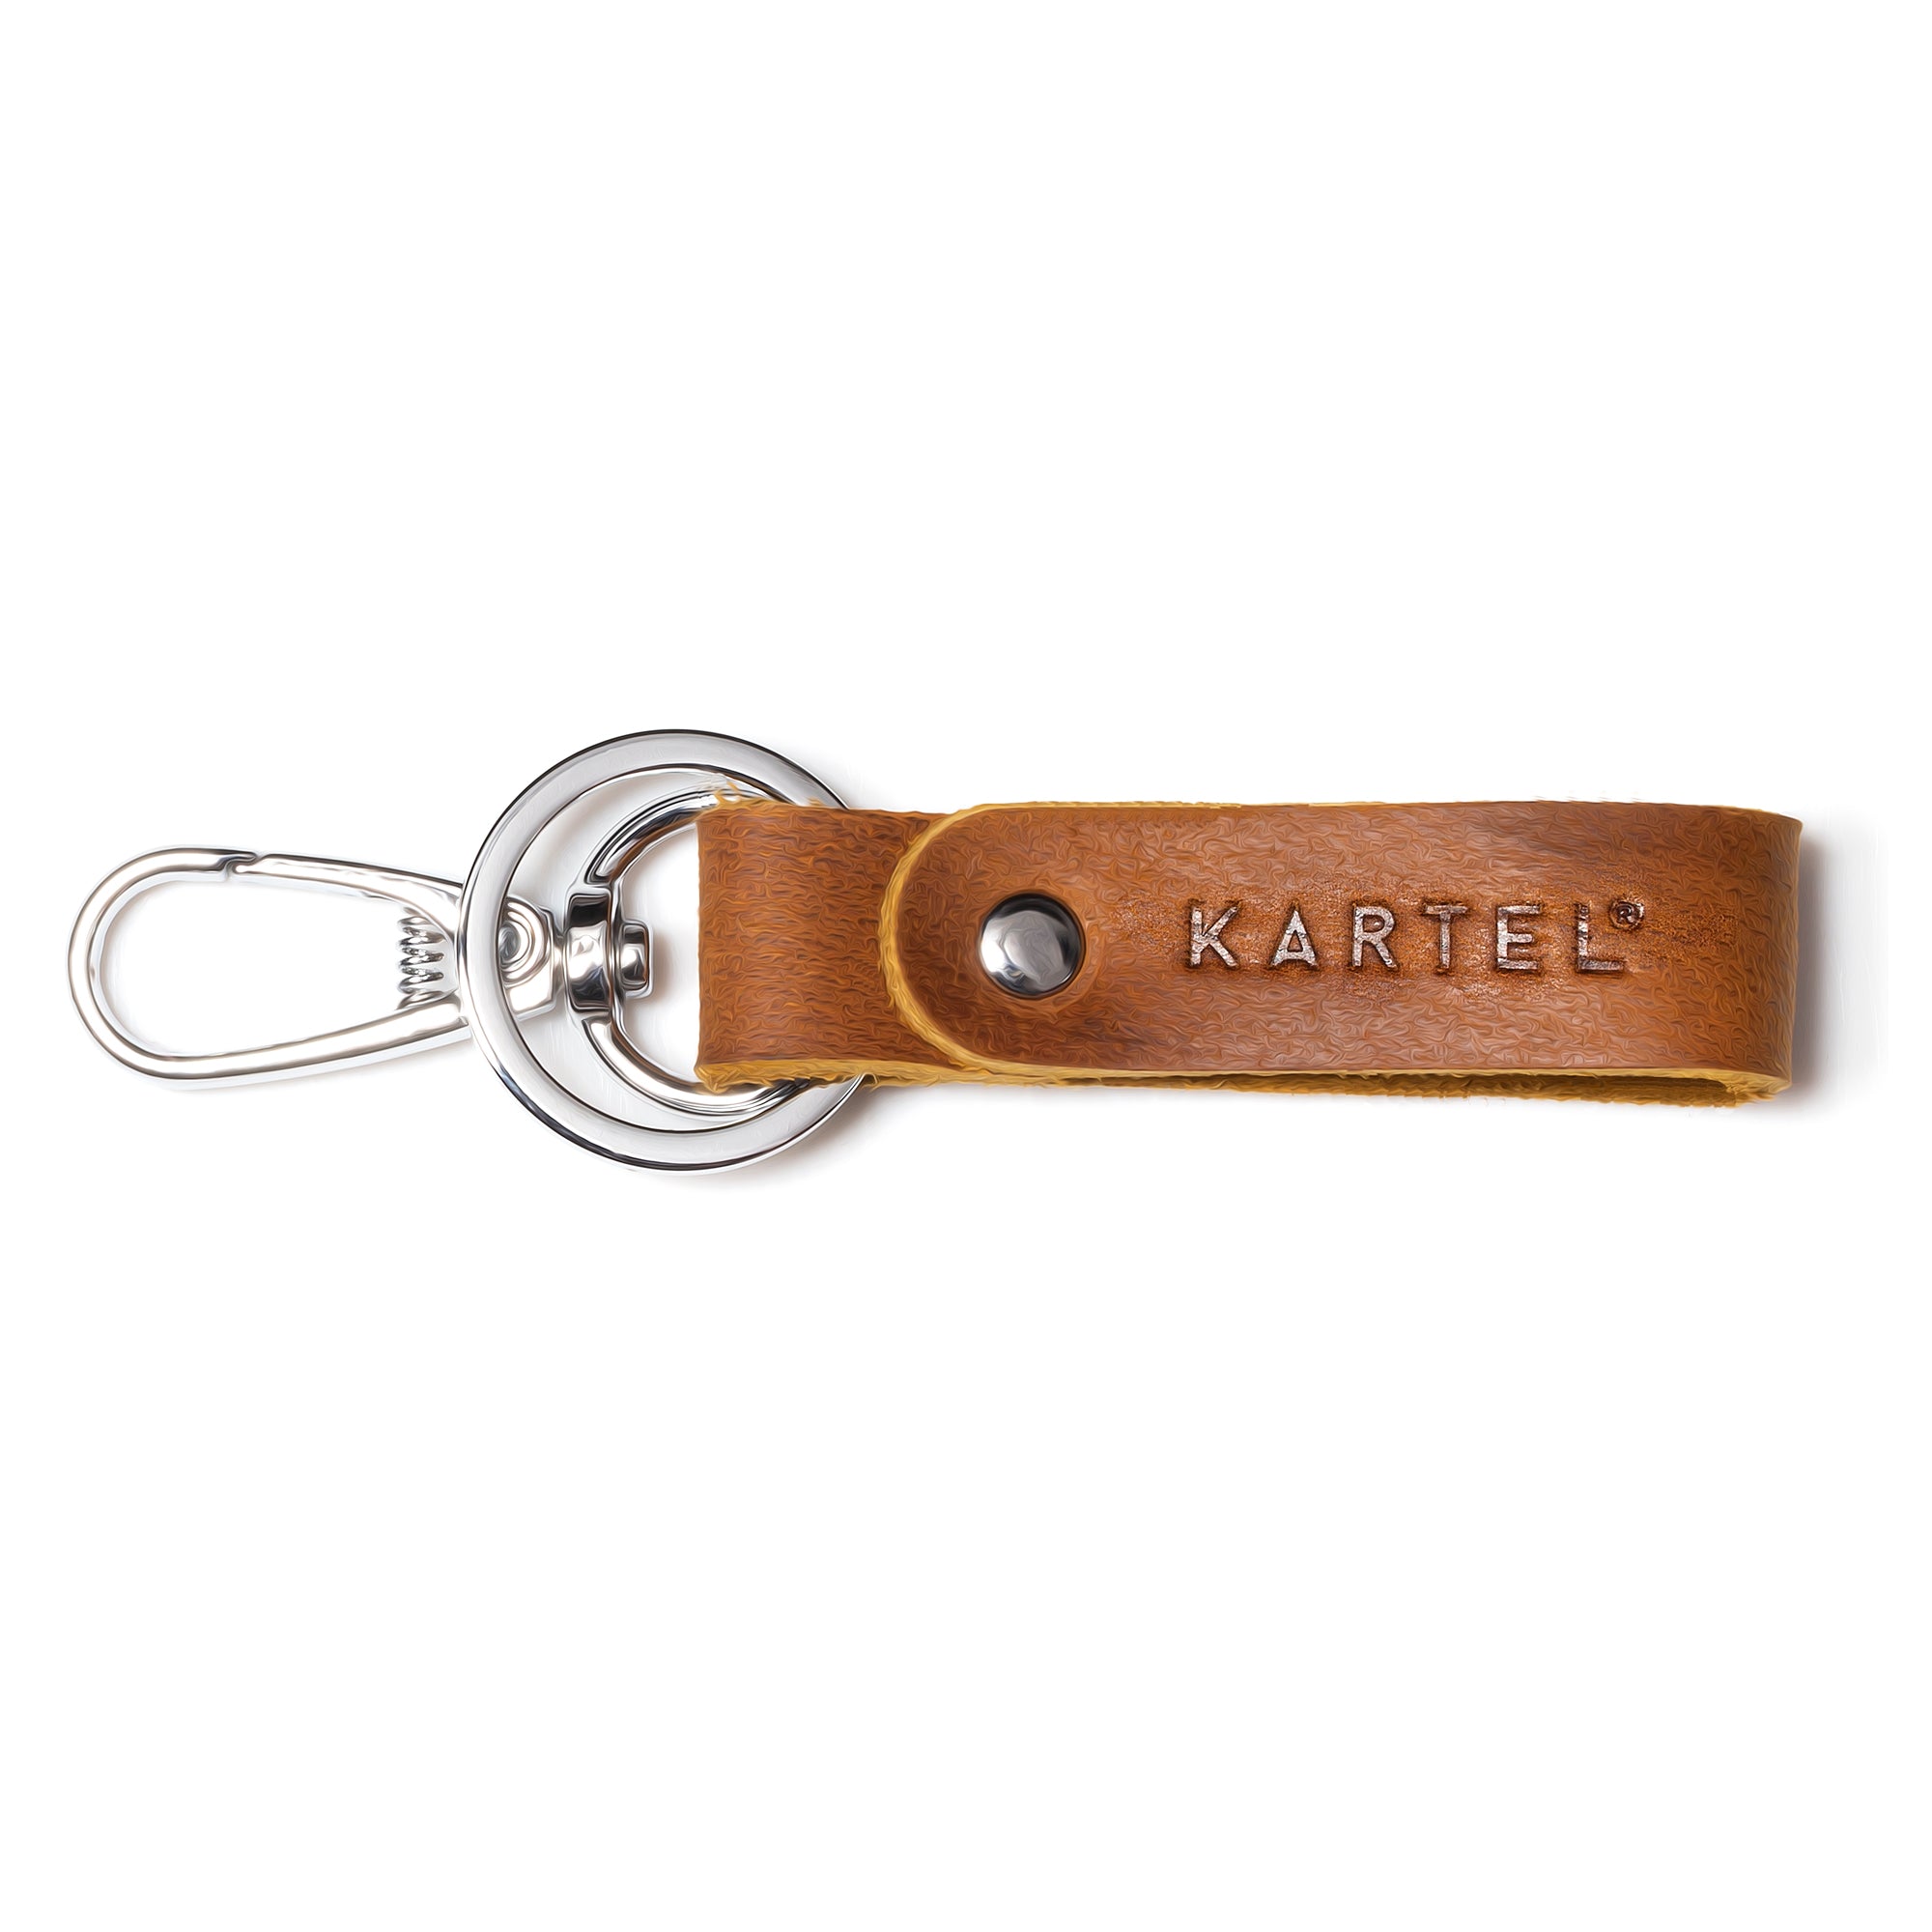 Kartel Key Ring - Leather loop Ring